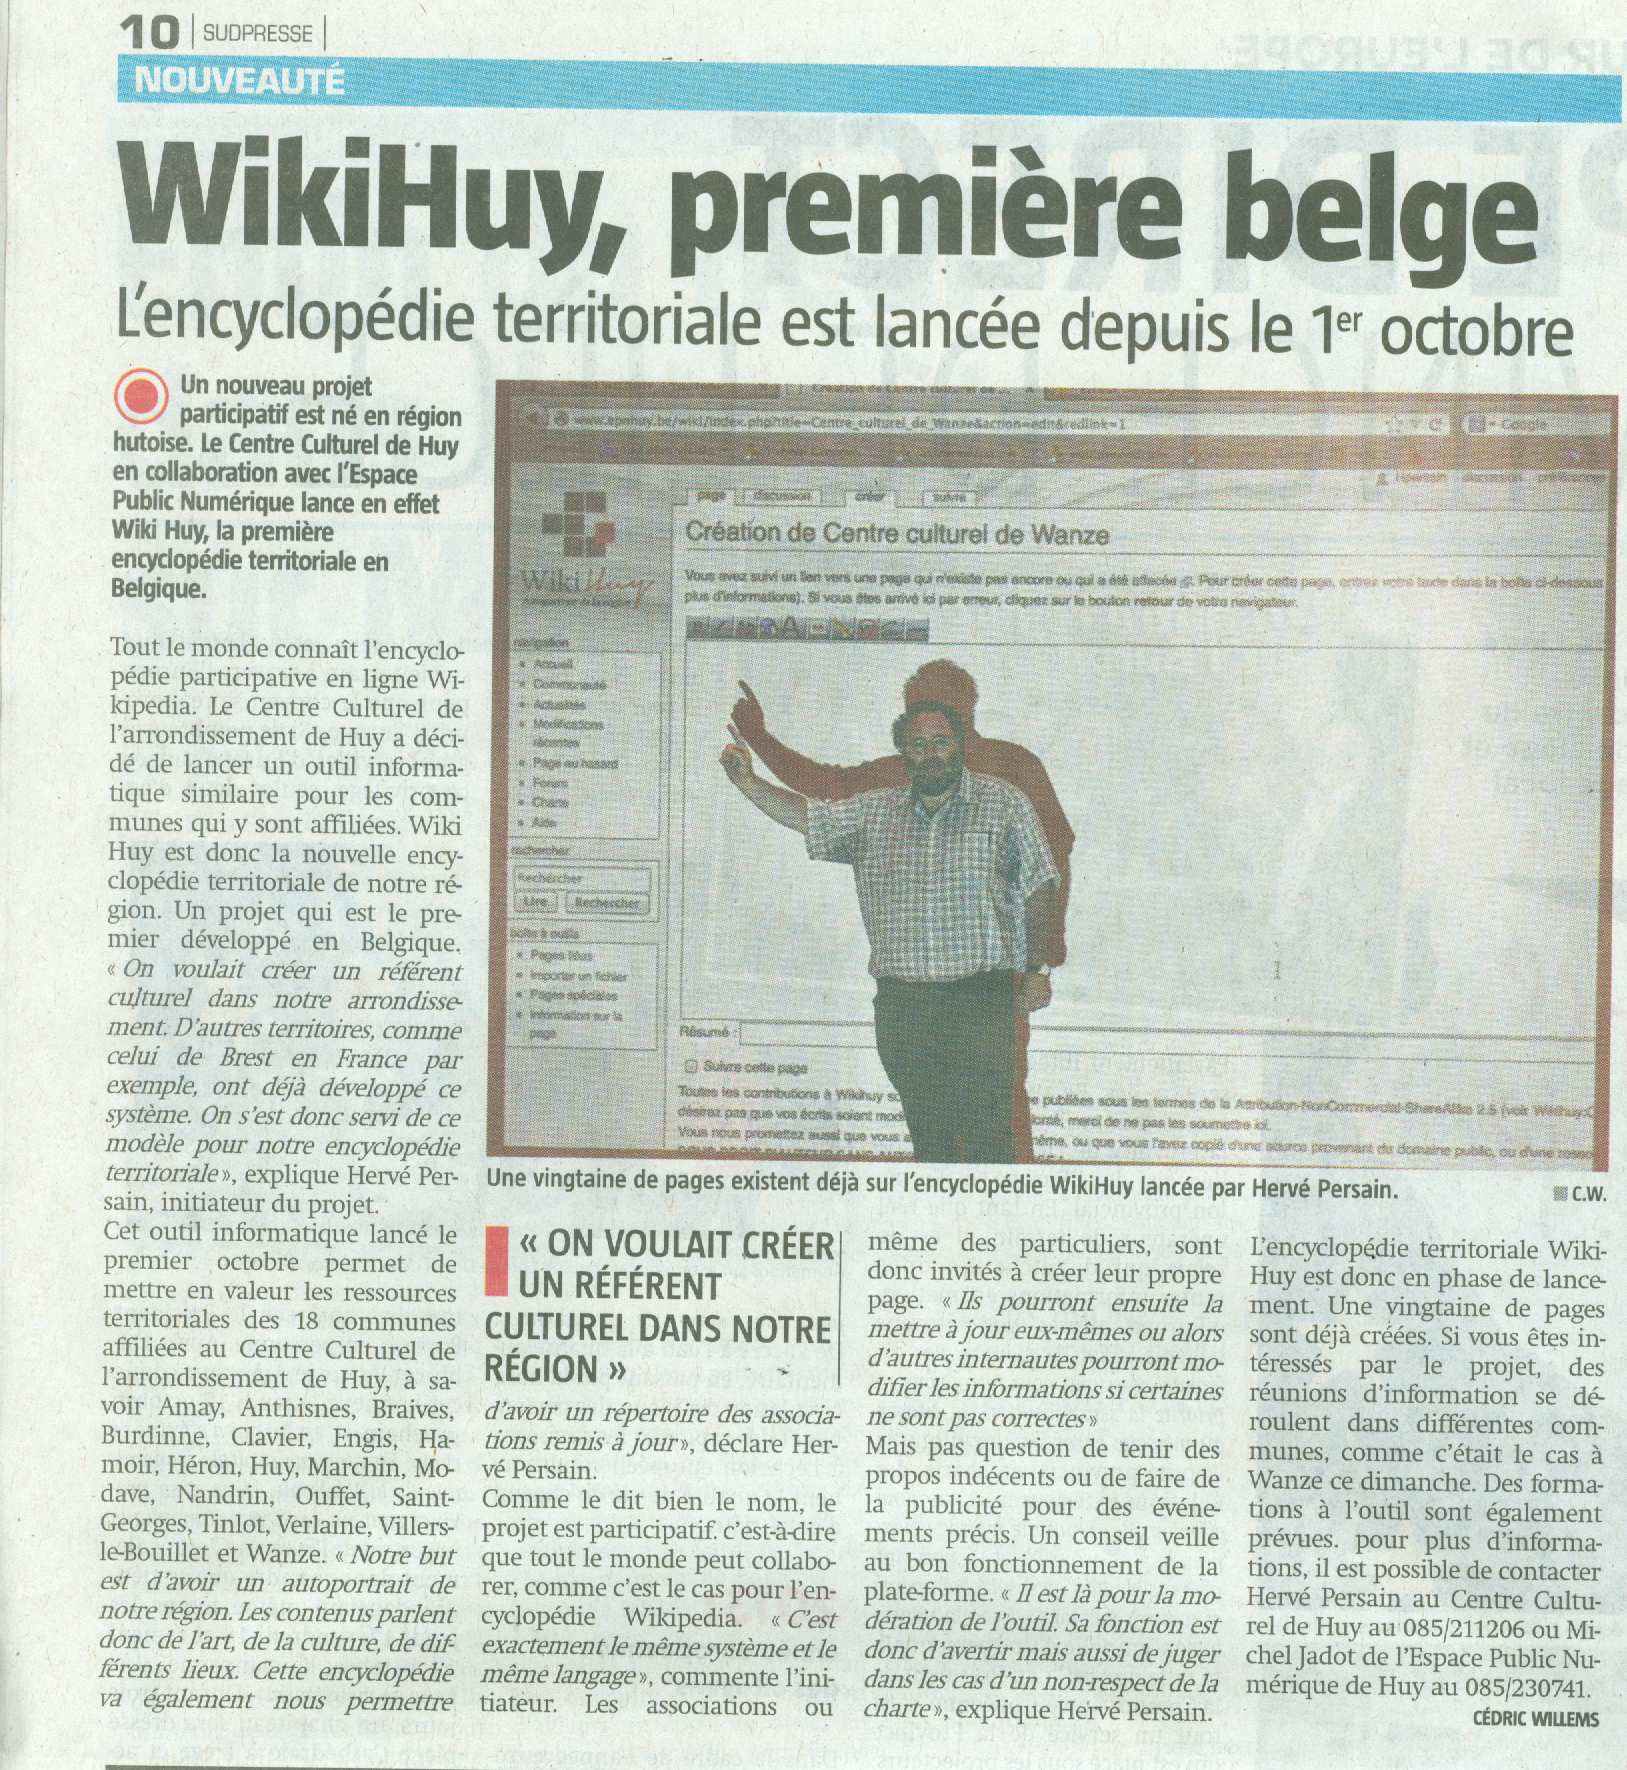 Inauguration de WikiHuy le 01/10/2013 à la Bibliothèque de Huy